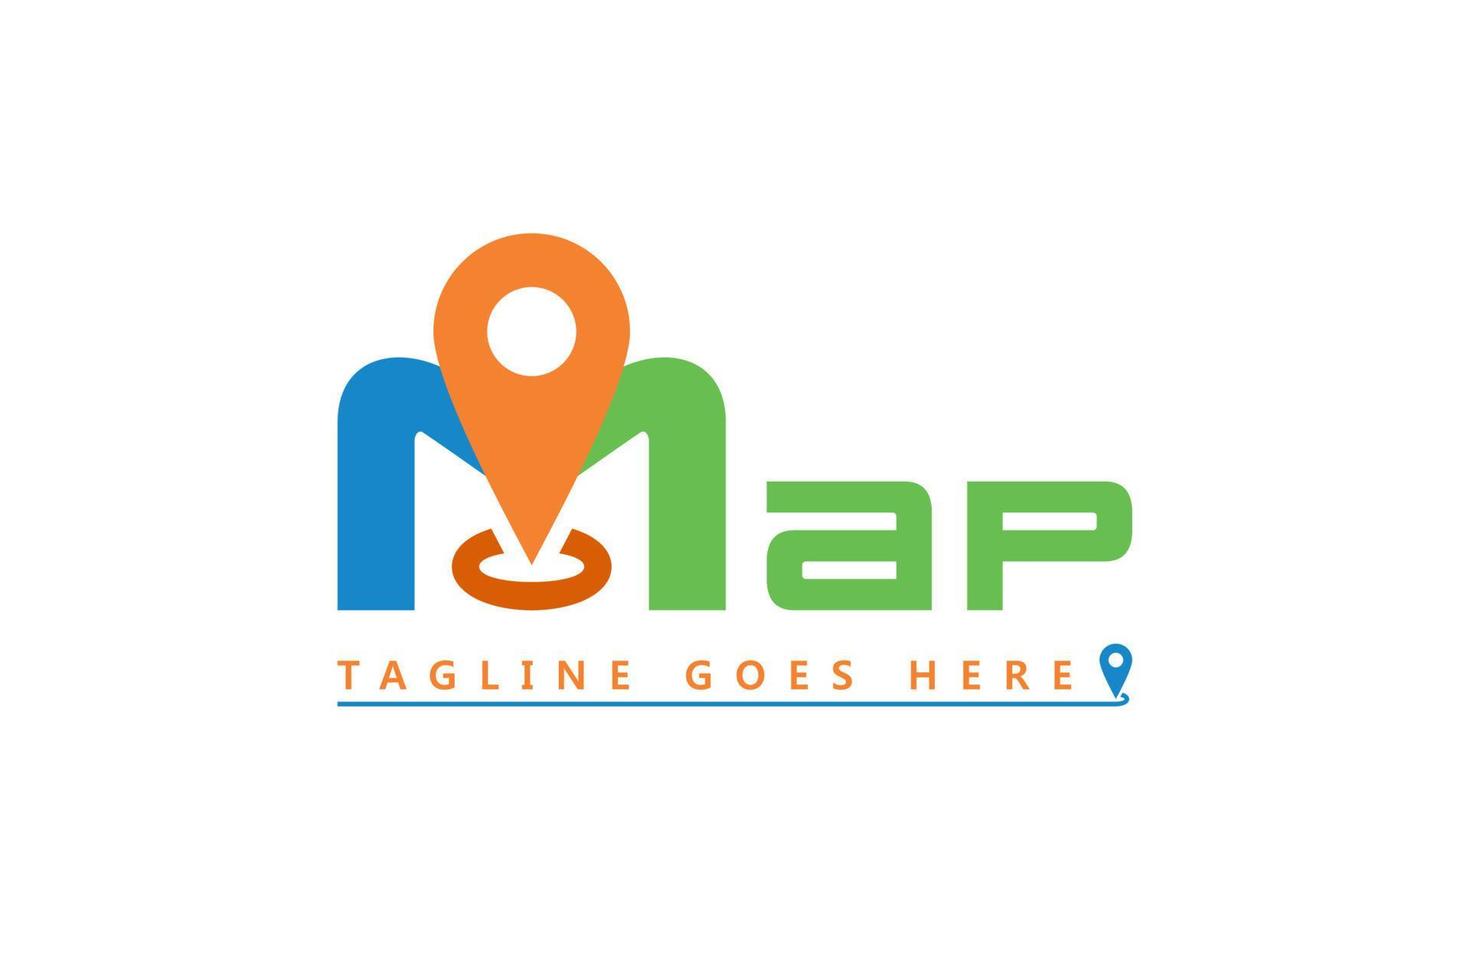 lettera m carta geografica tipografia vettore per GPS carta geografica App logo disegno, carta geografica logo con perno punto Posizione